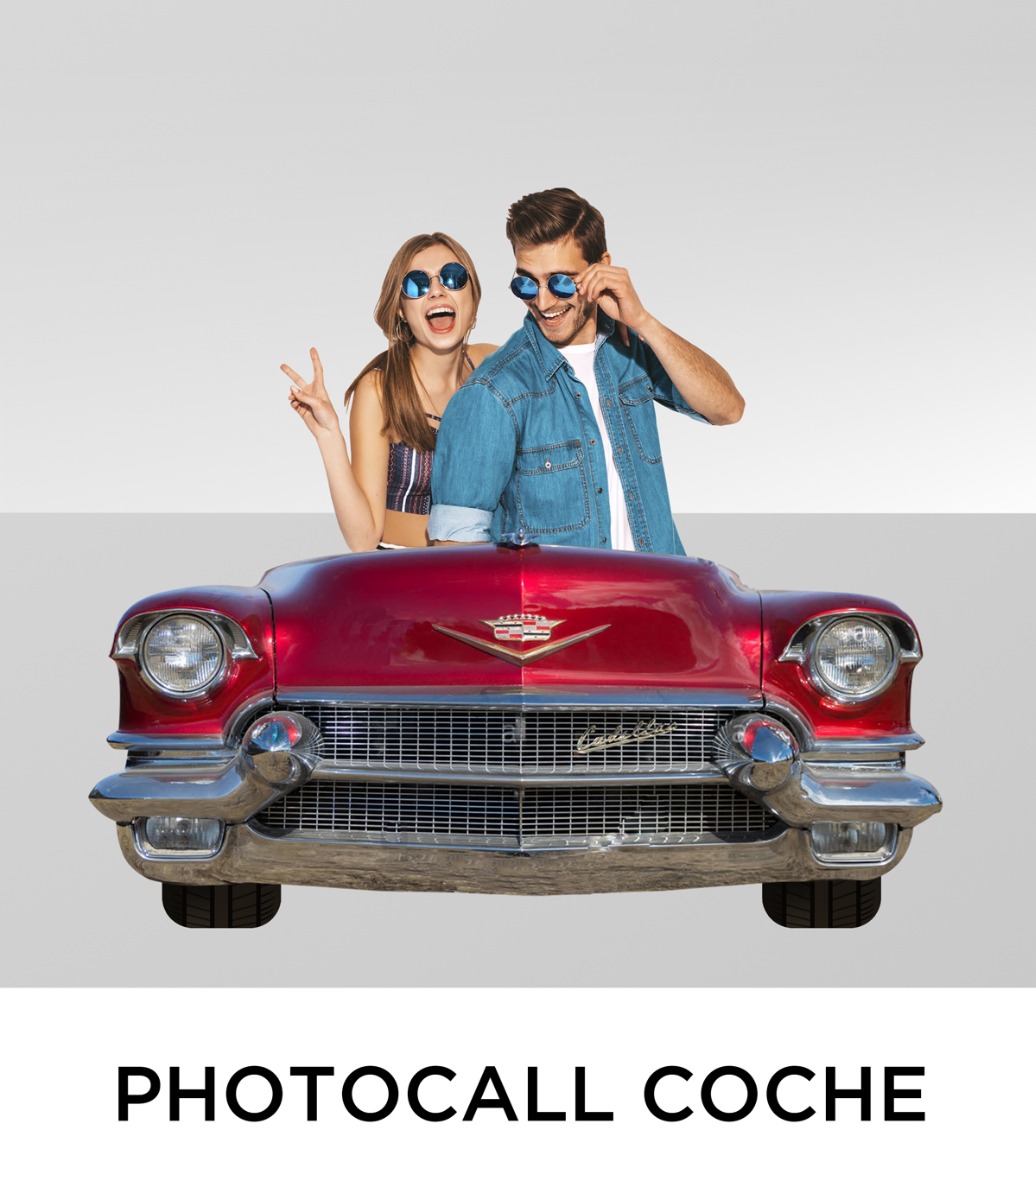 Photocall Coche